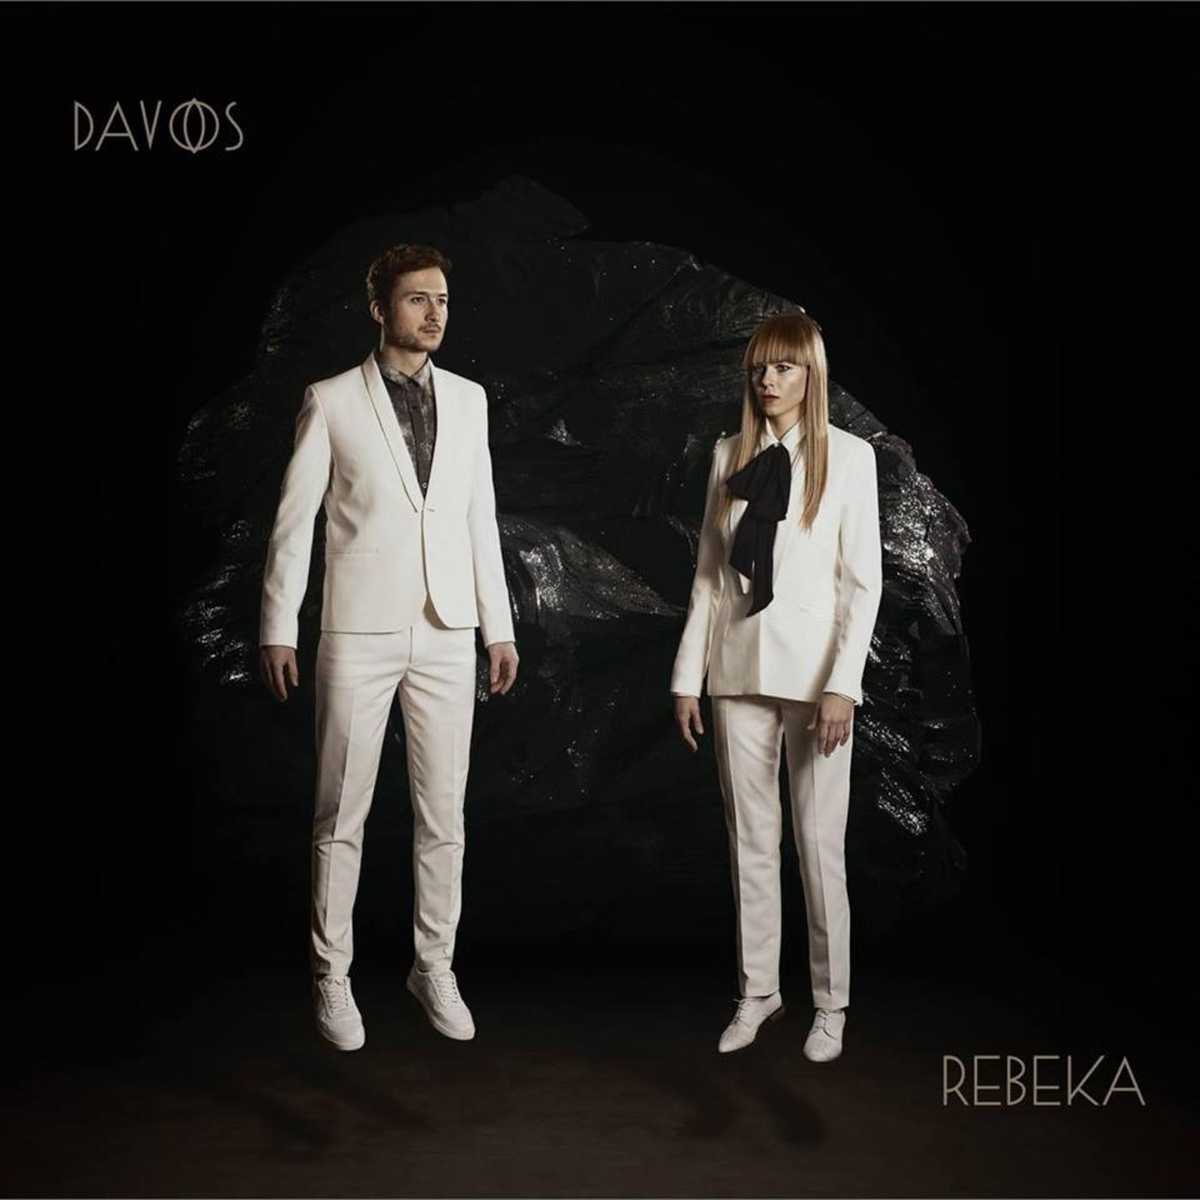 Rebeka - Davos